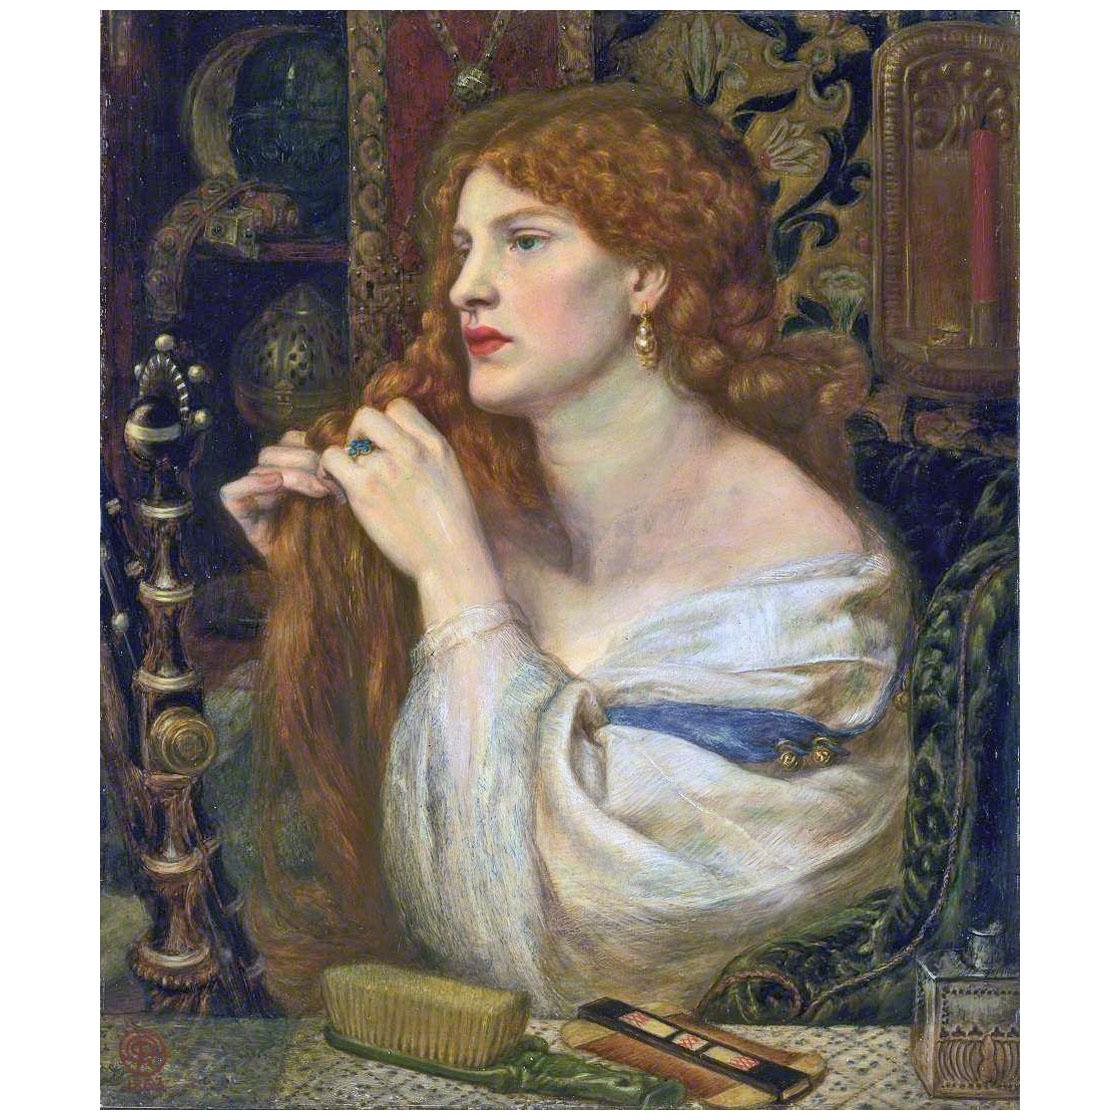 Dante Gabriel Rossetti. Aurelia. 1863 / 1873. Tate Britain